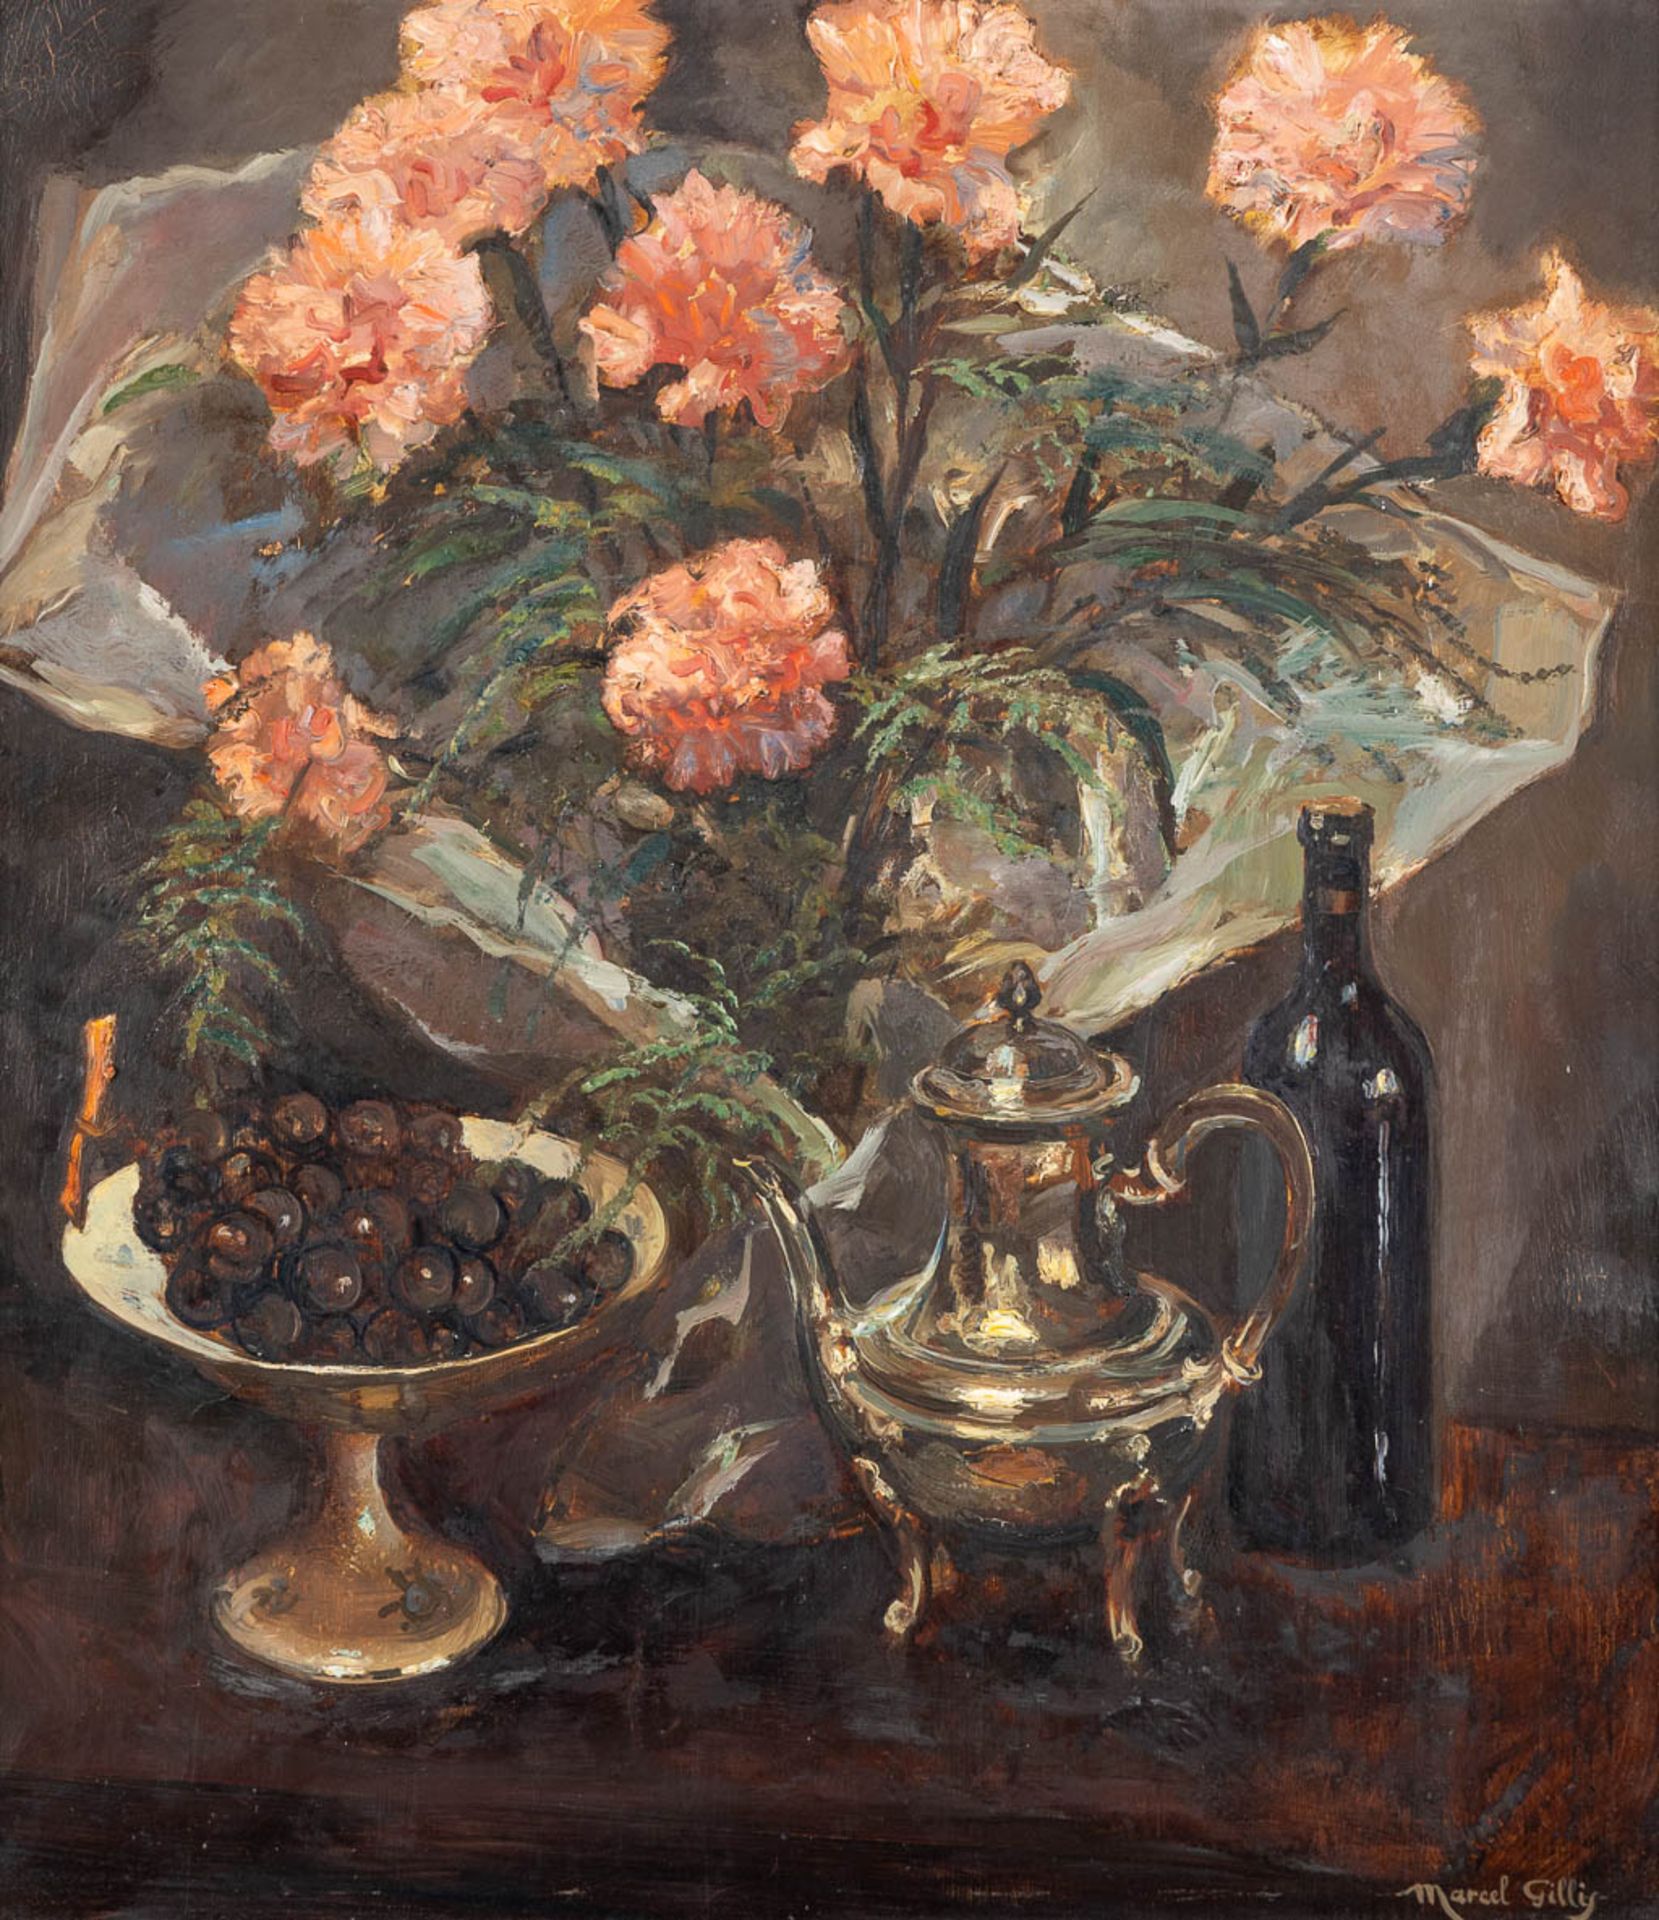 Marcel GILLIS (1897-1972) 'Flower Stilllife' oil on canvas. (W:70 x H:80 cm)